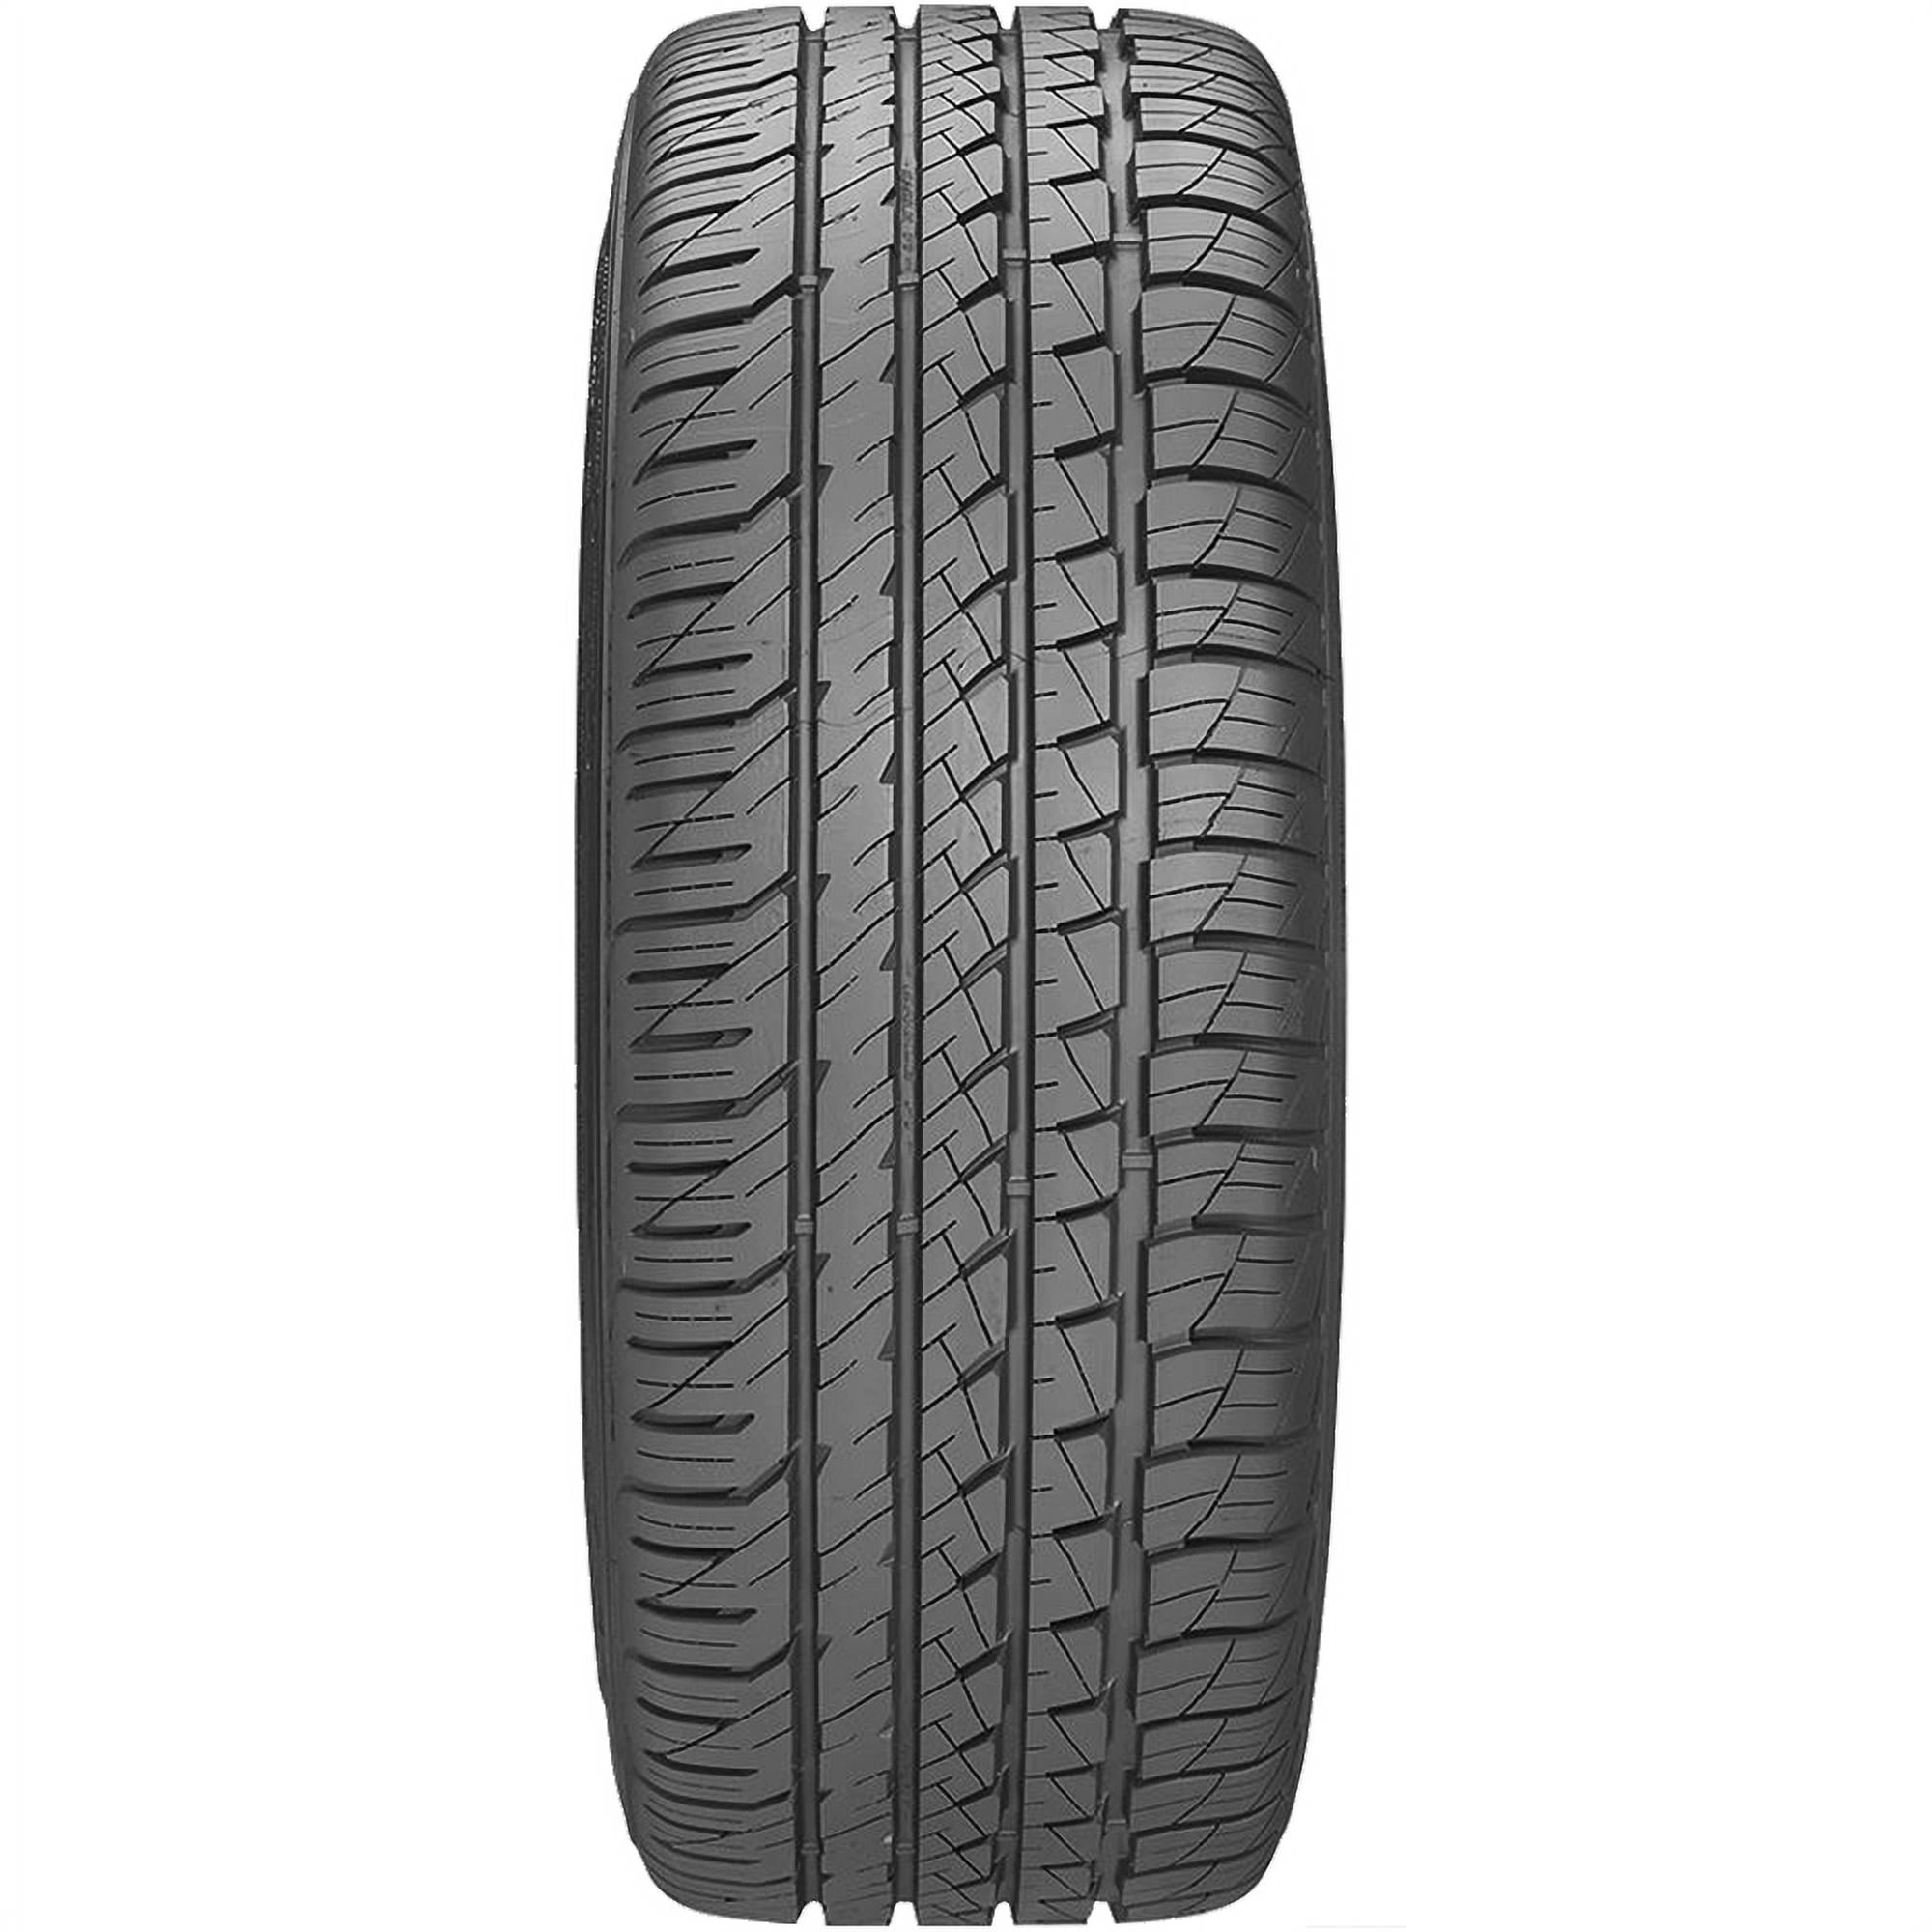 Goodyear Eagle F1 Asymmetric All-Season 255/45R18 99 W Tire